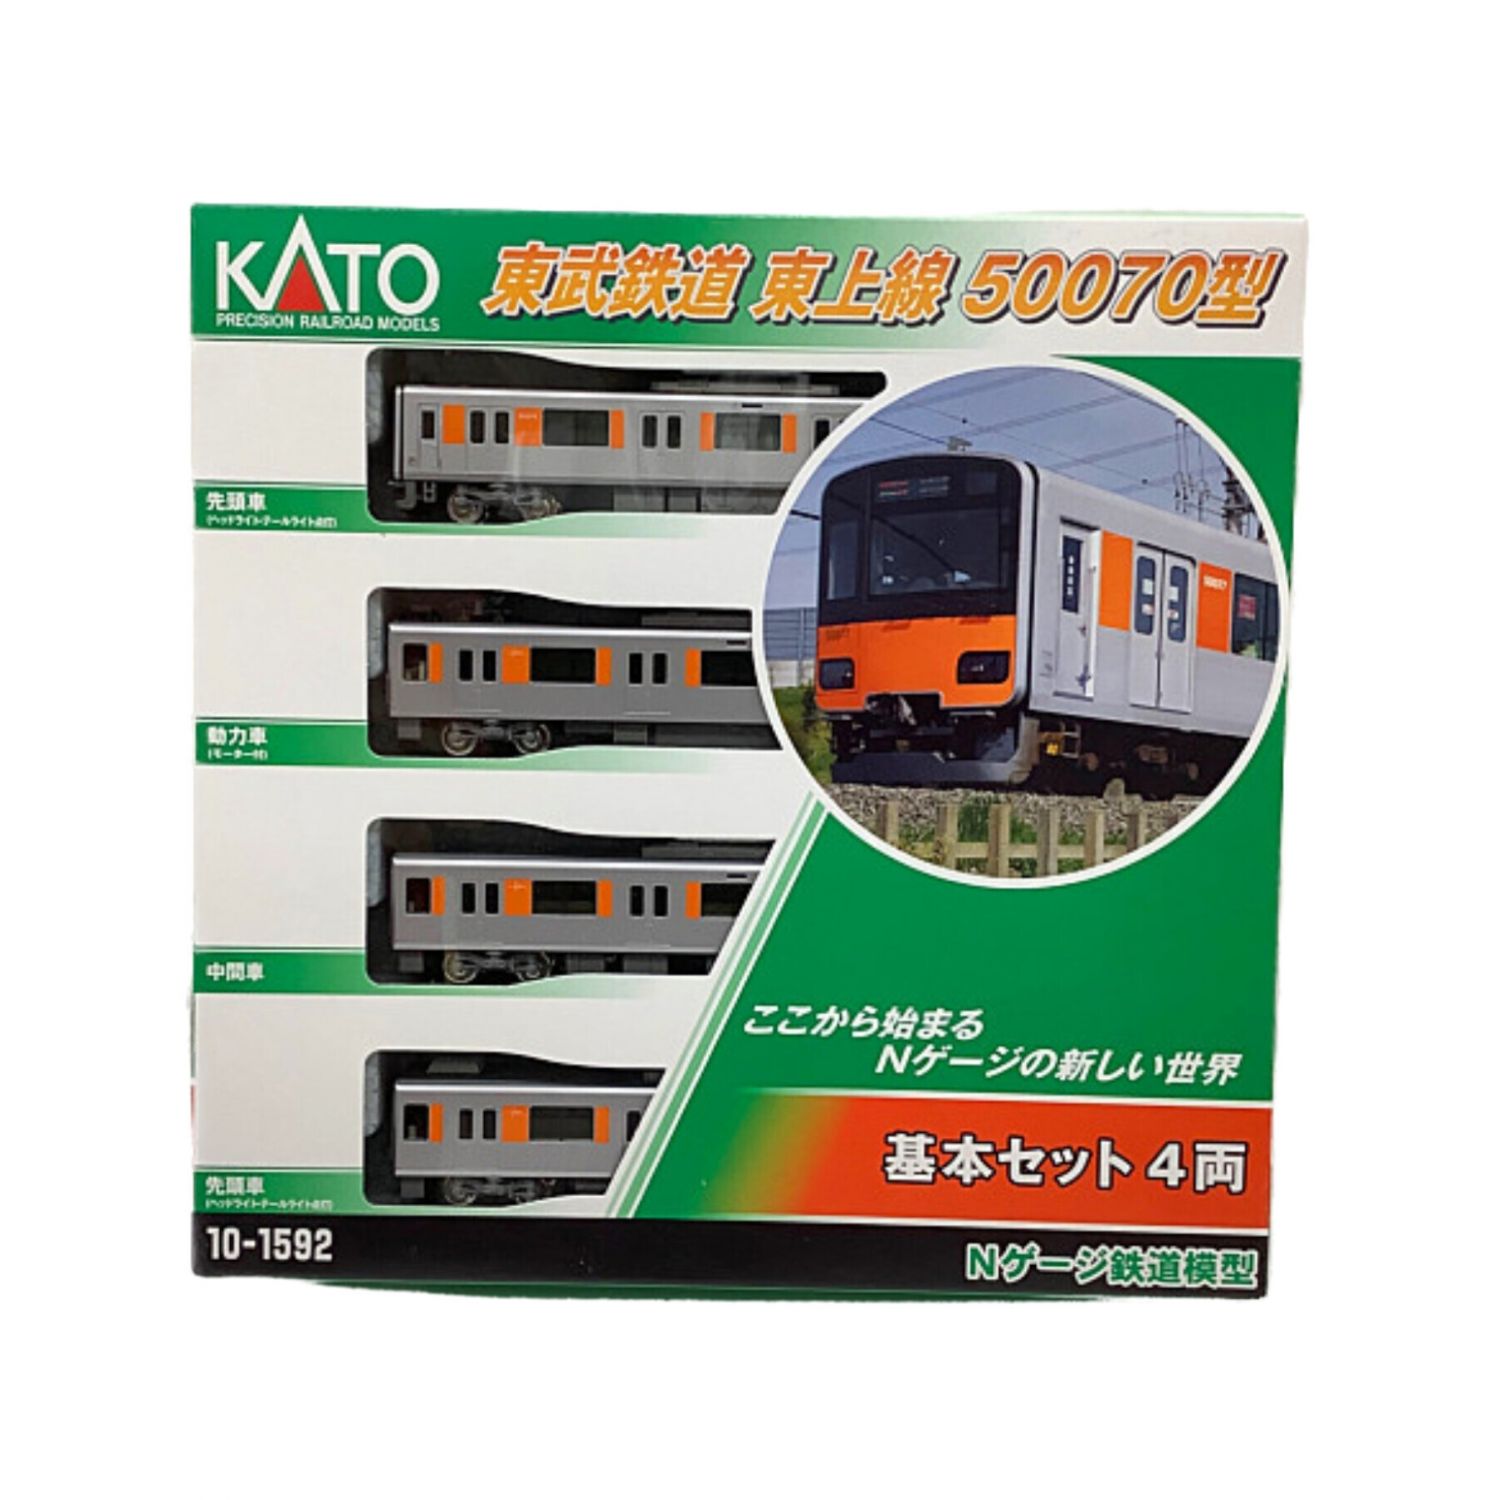 新品未使用10-1592KATO 東武鉄道 東上線 50070型 基本セット-